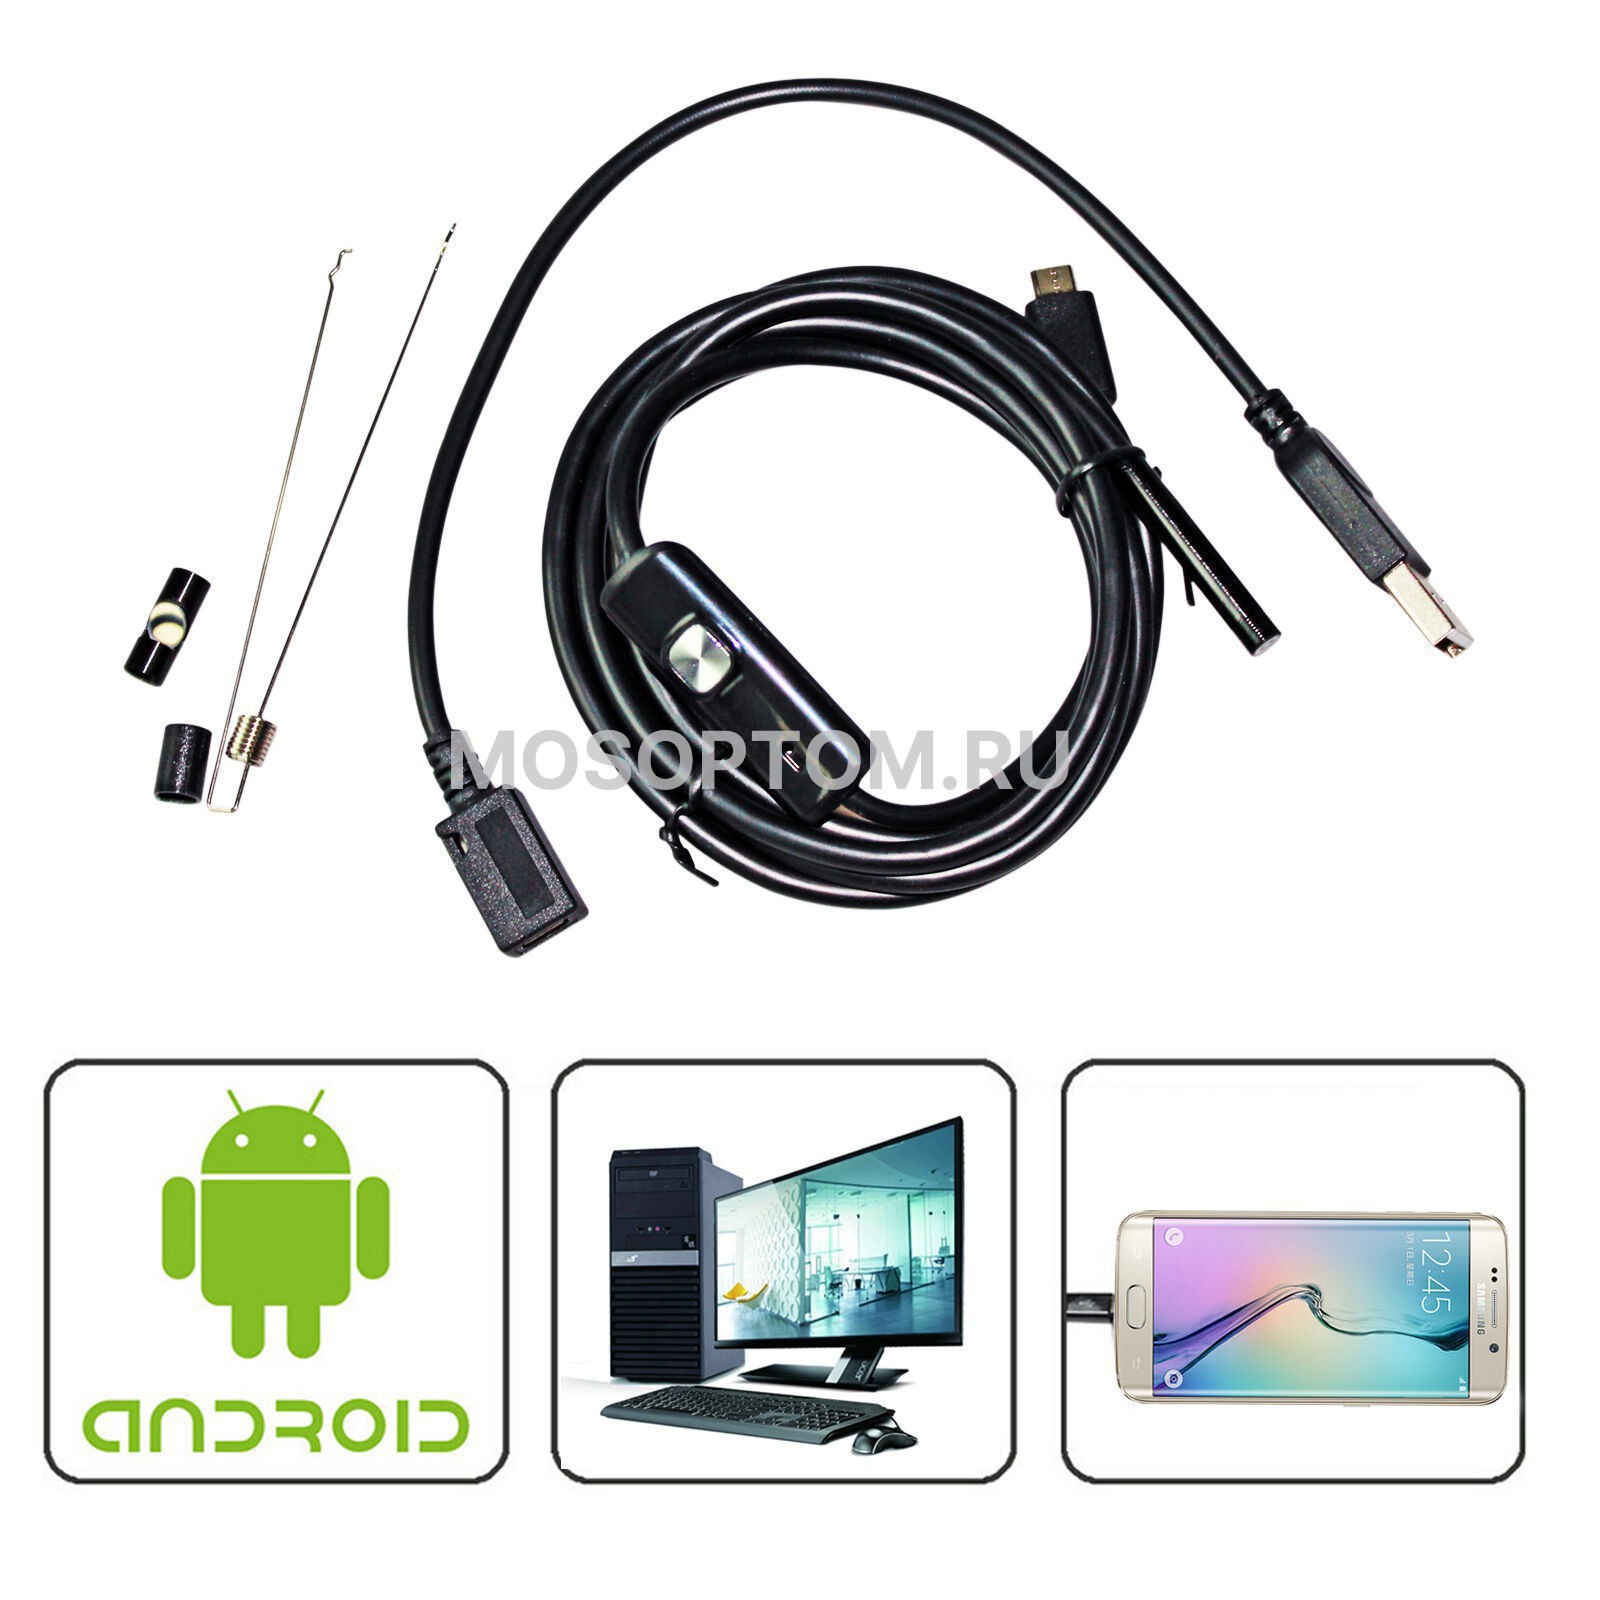 Эндоскоп для Android и ПК USB с камерой 5м оптом